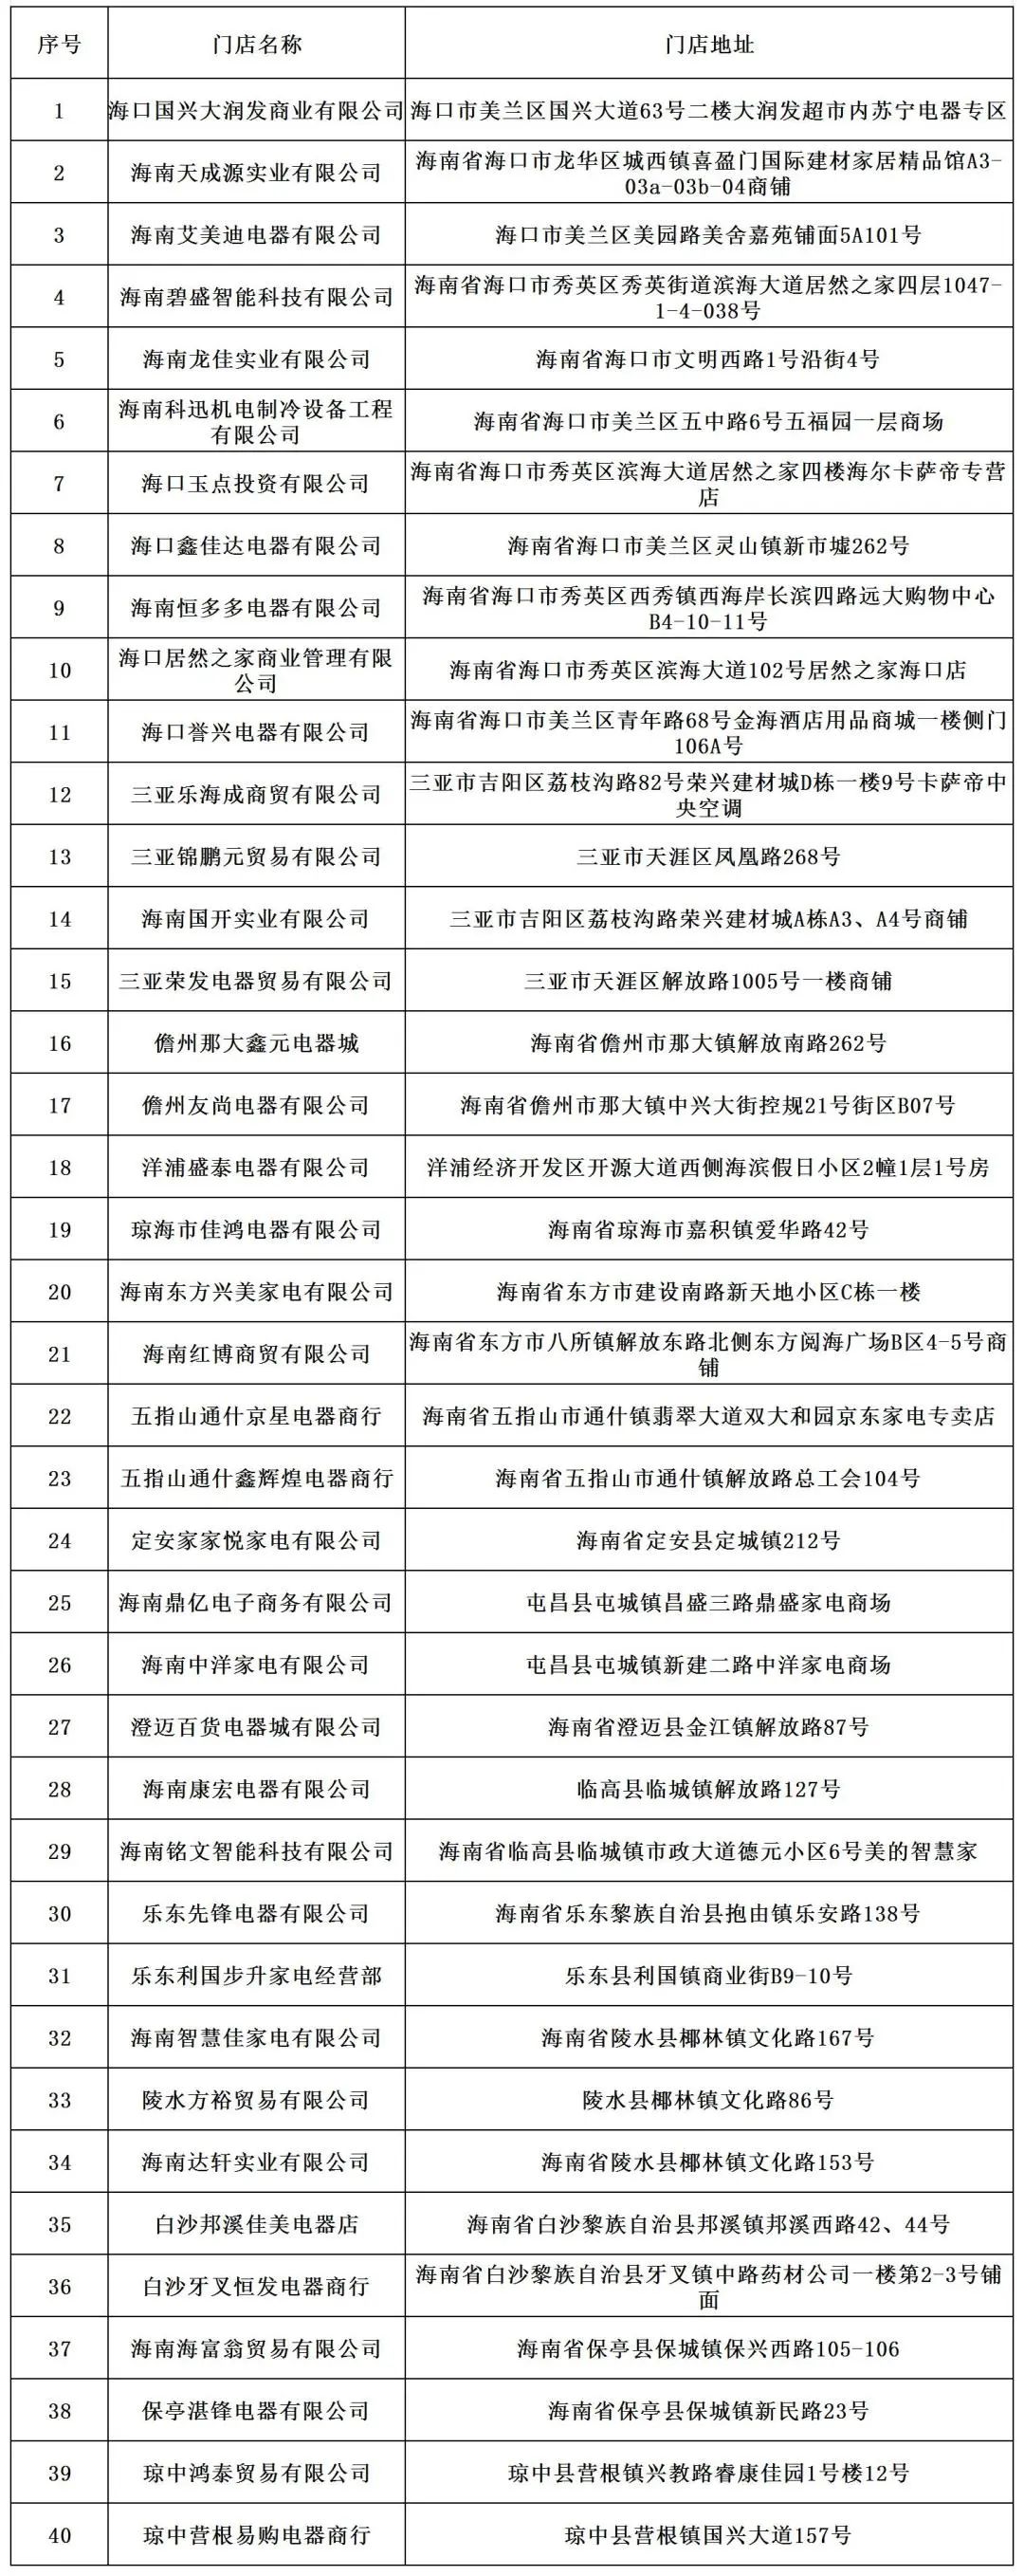 海南省三批绿色智能家电补贴政策参与企业名单如下:临高县入选企业为